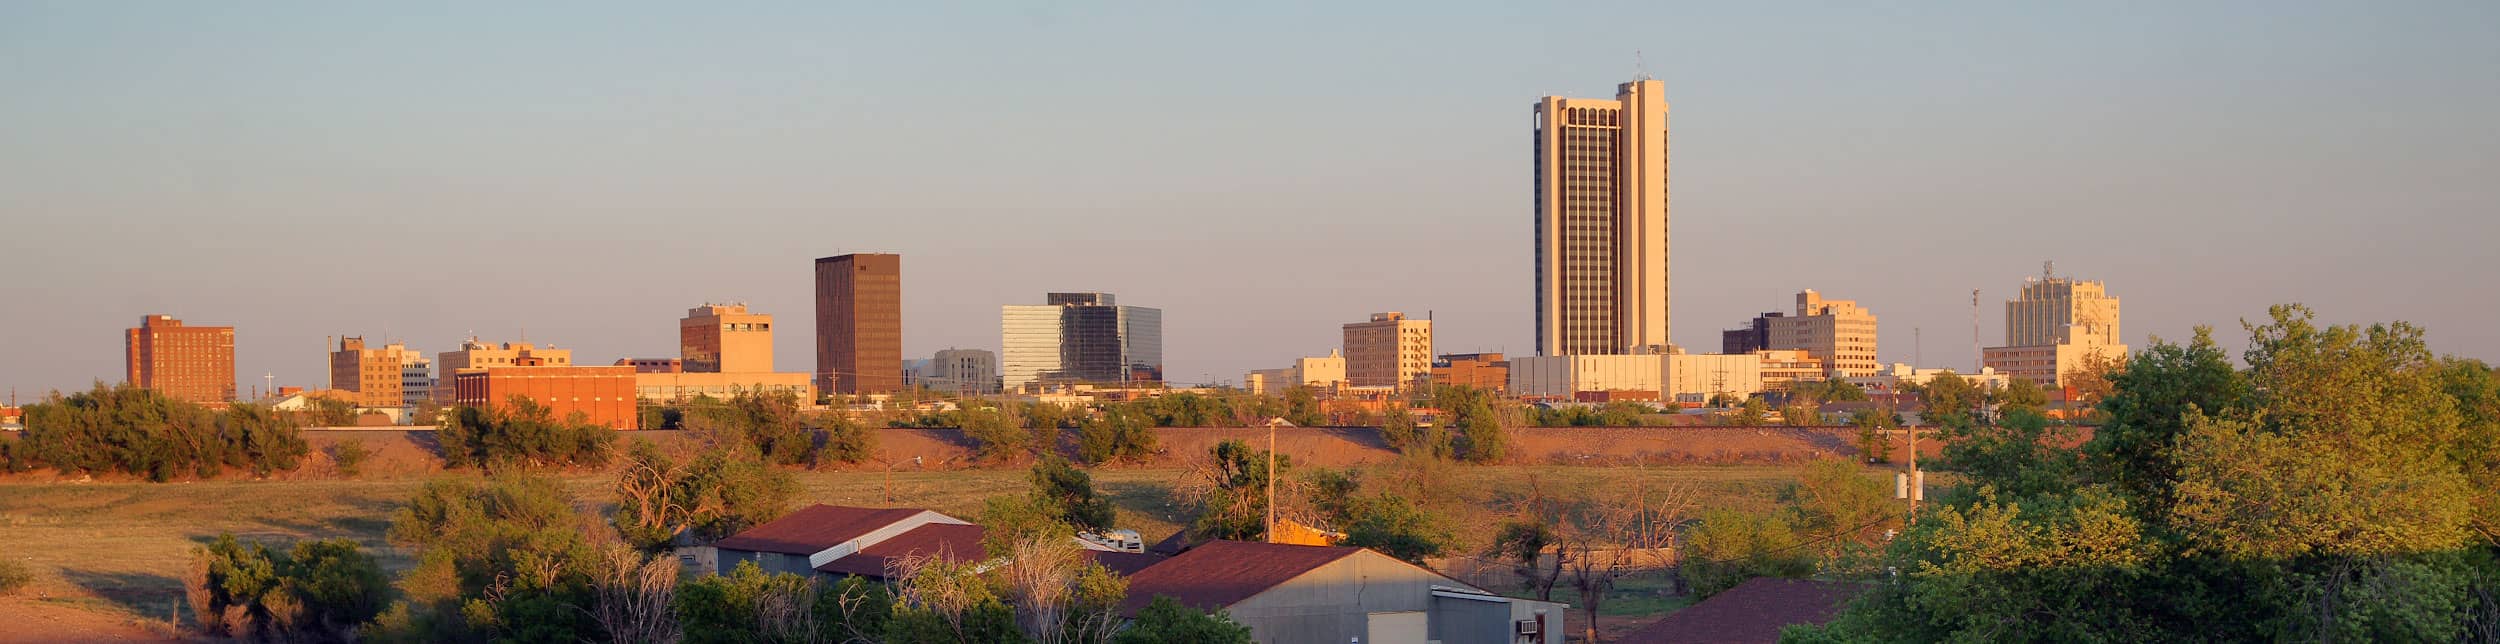 Skyline of Amarillo, Texas